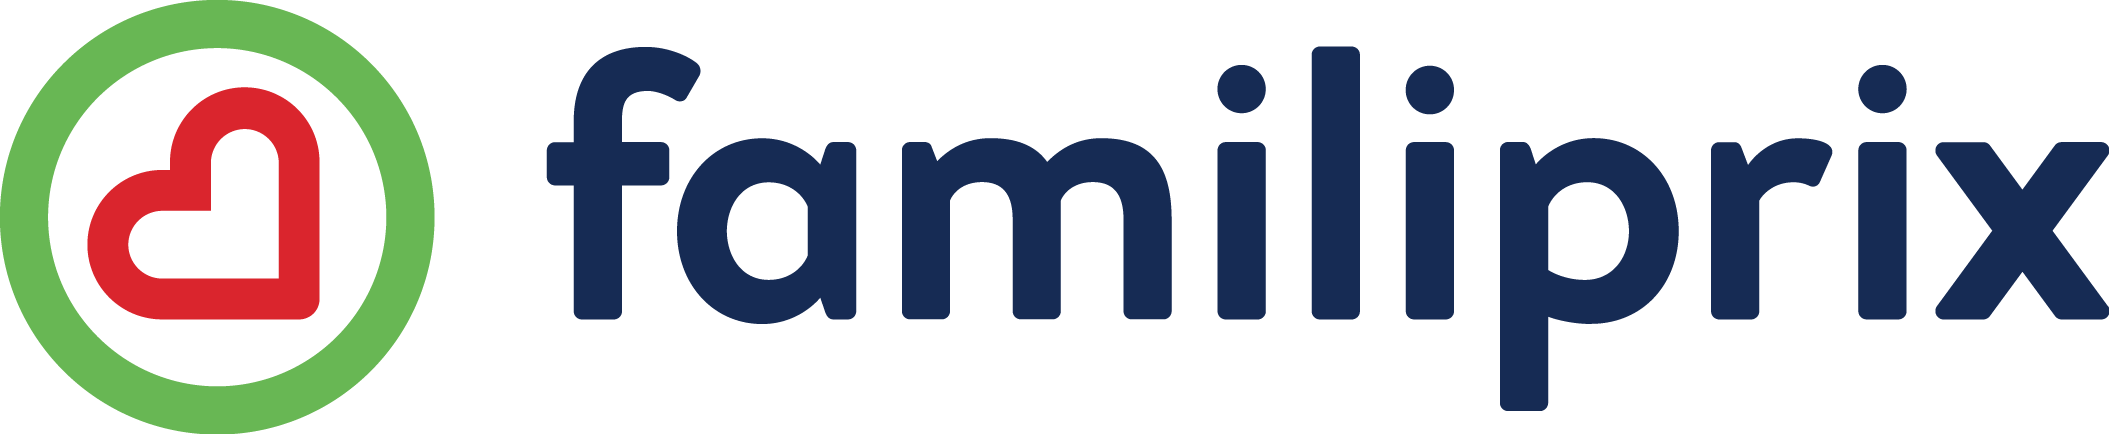 Familiprix Logo